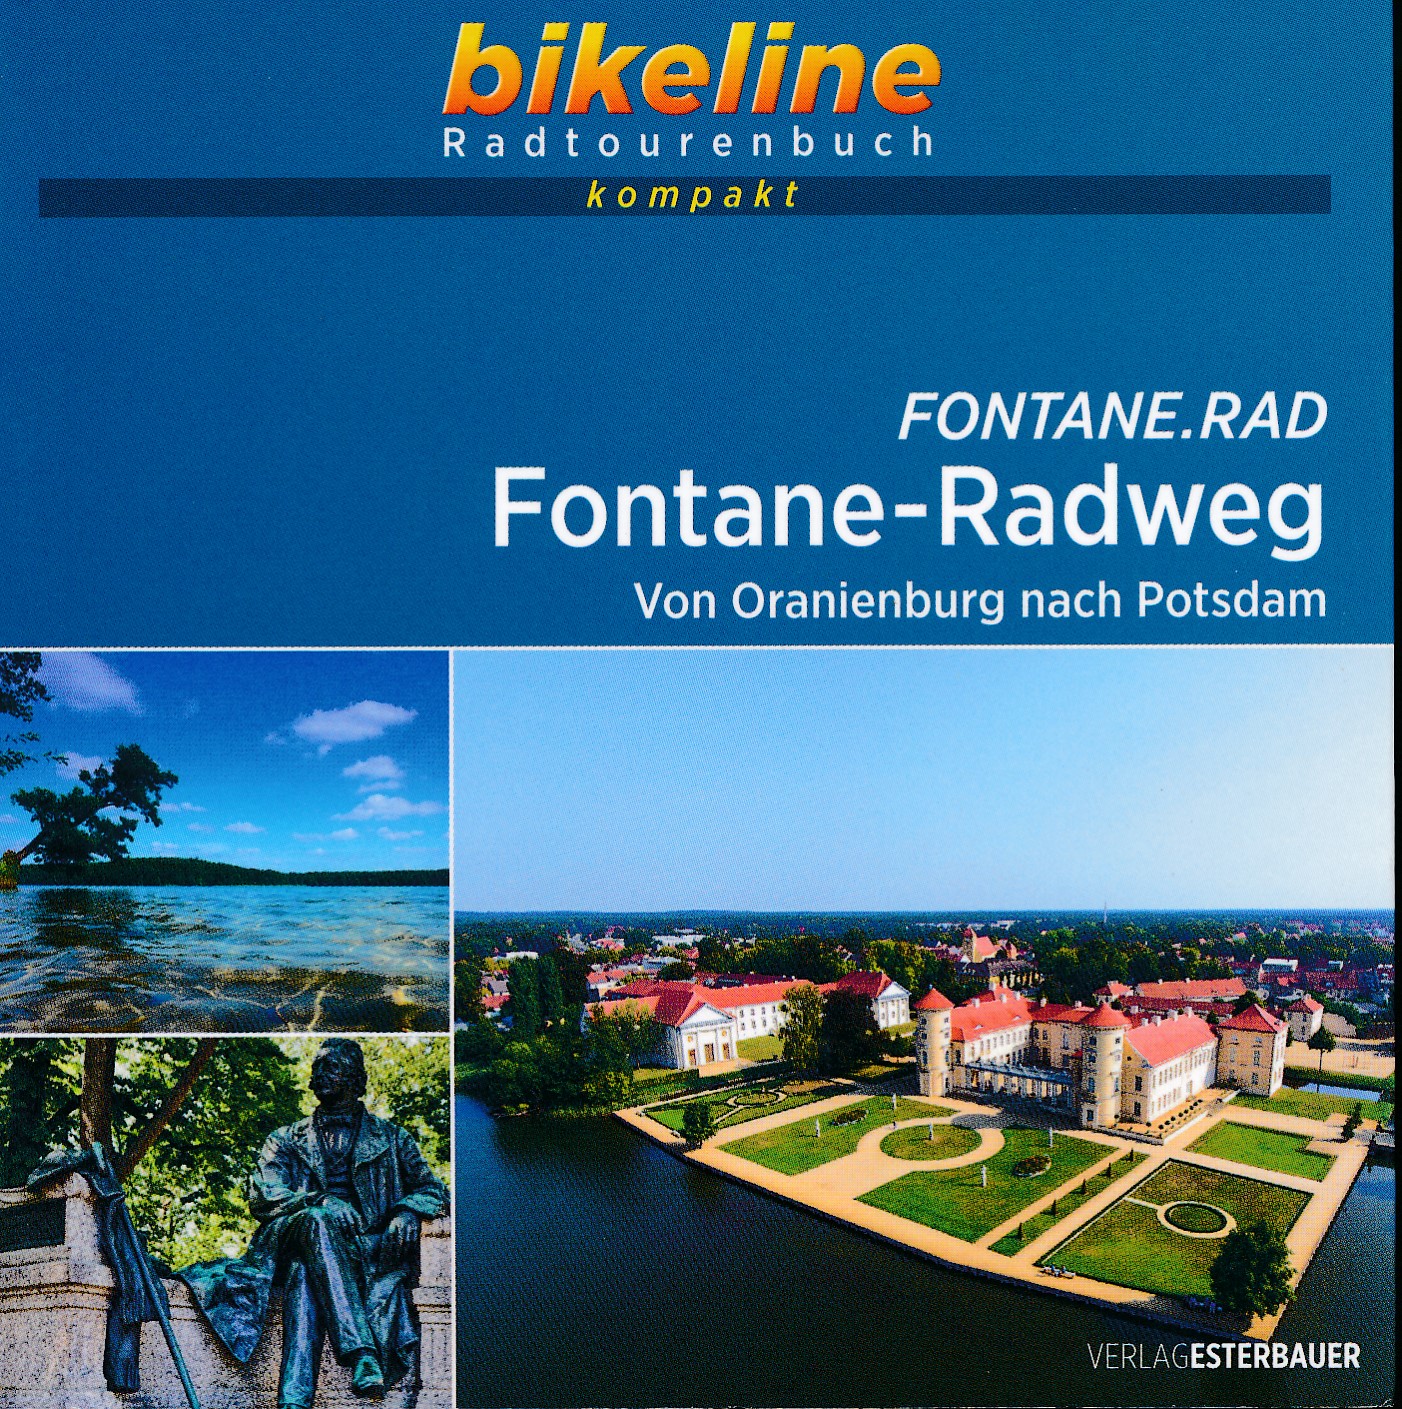 Online bestellen: Fietsgids Bikeline Radtourenbuch kompakt Fontaine - Radweg | Esterbauer